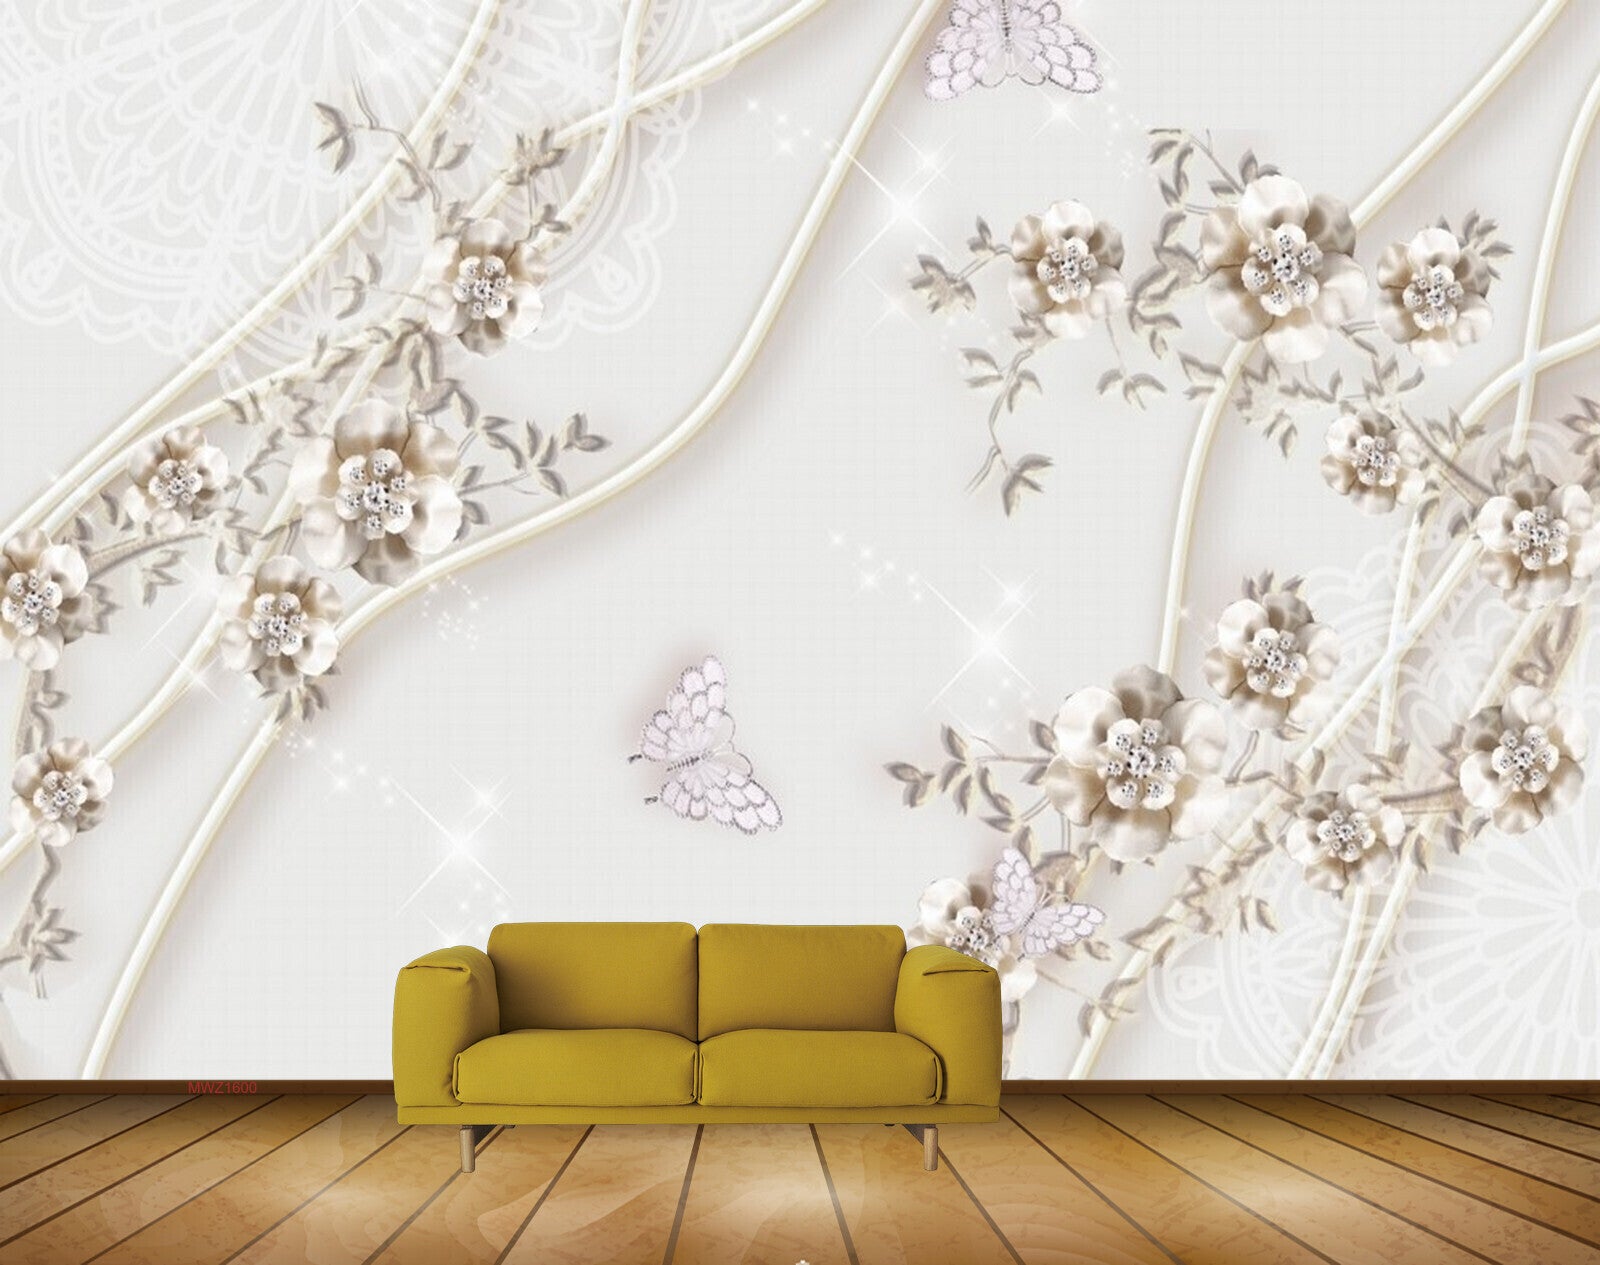 Avikalp MWZ1600 White Golden Flowers Butterflies 3D HD Wallpaper